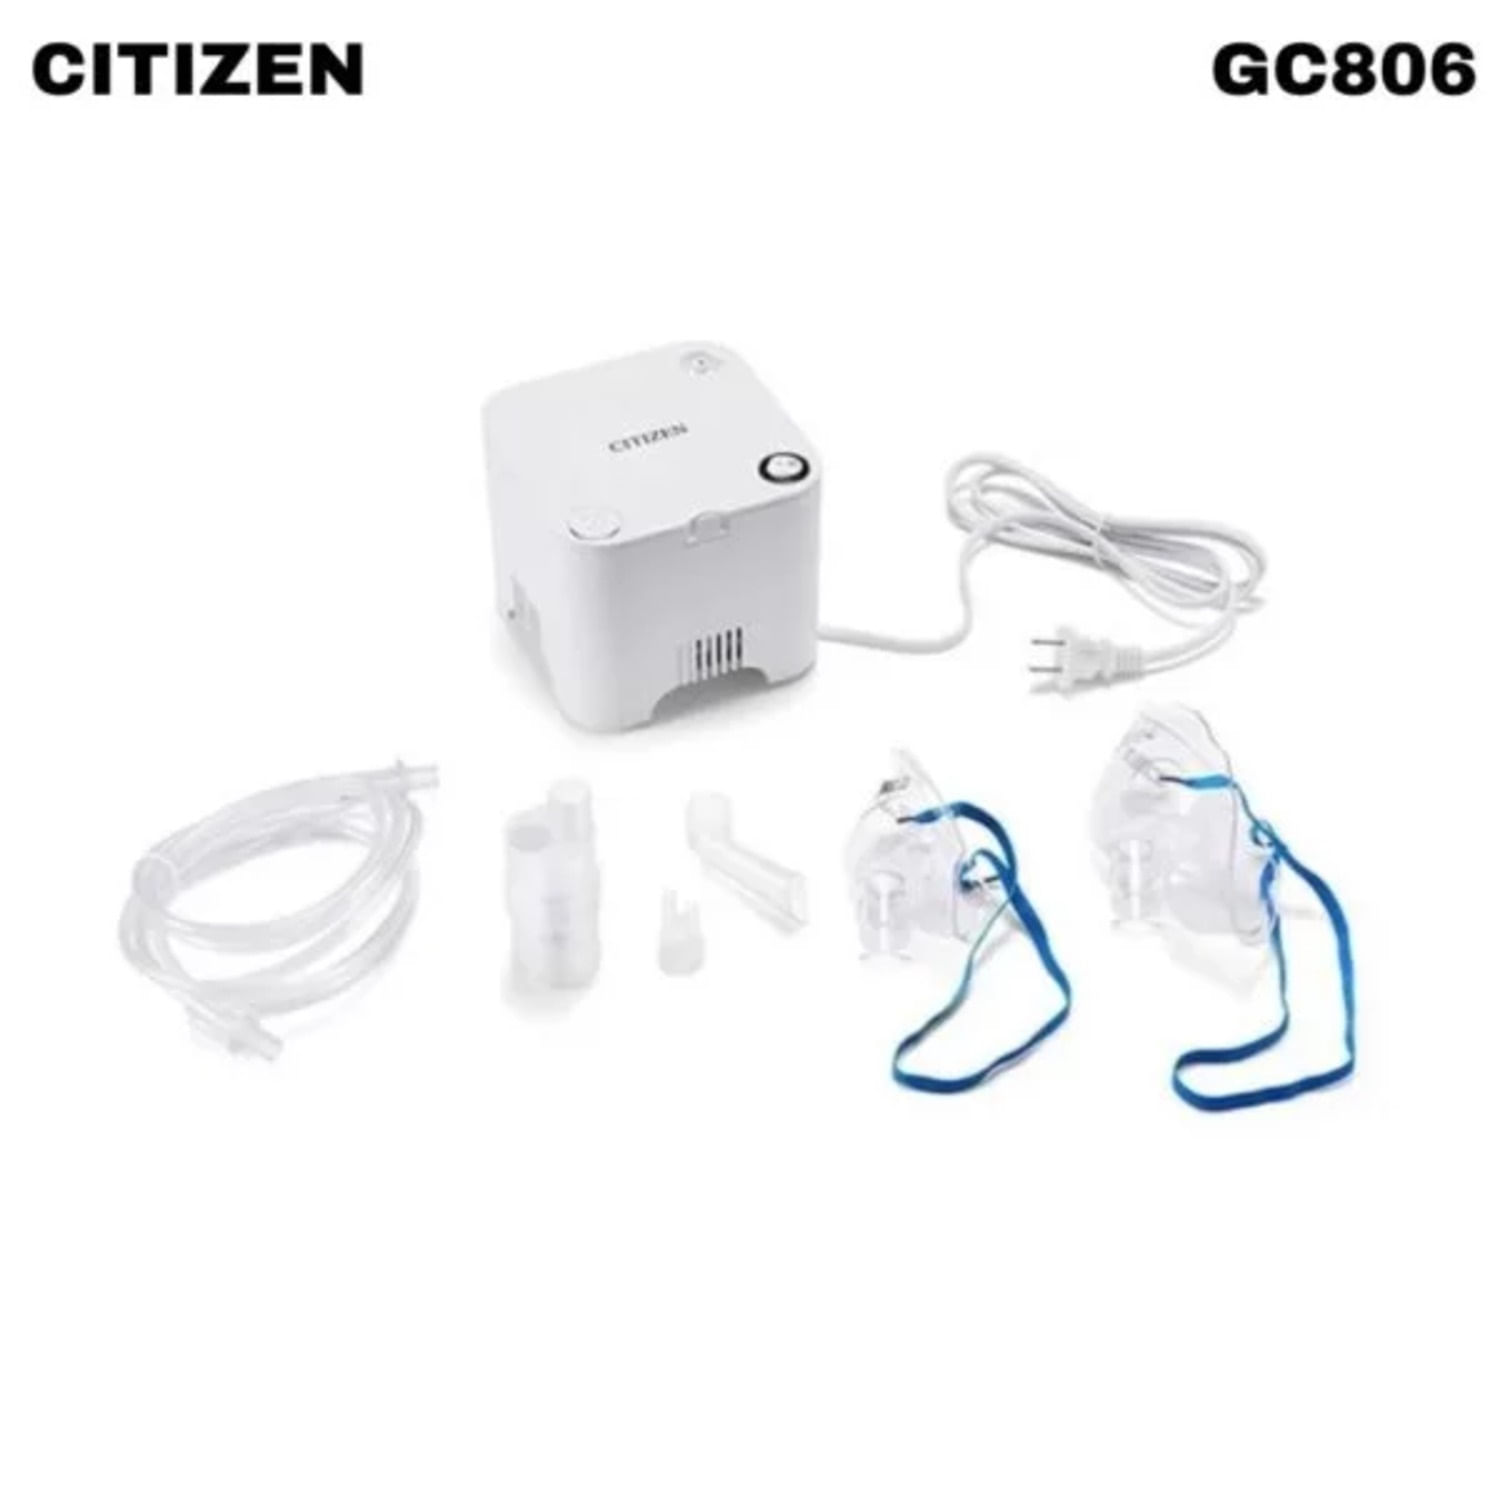 Nebulizador Compresor Citizen Cg806